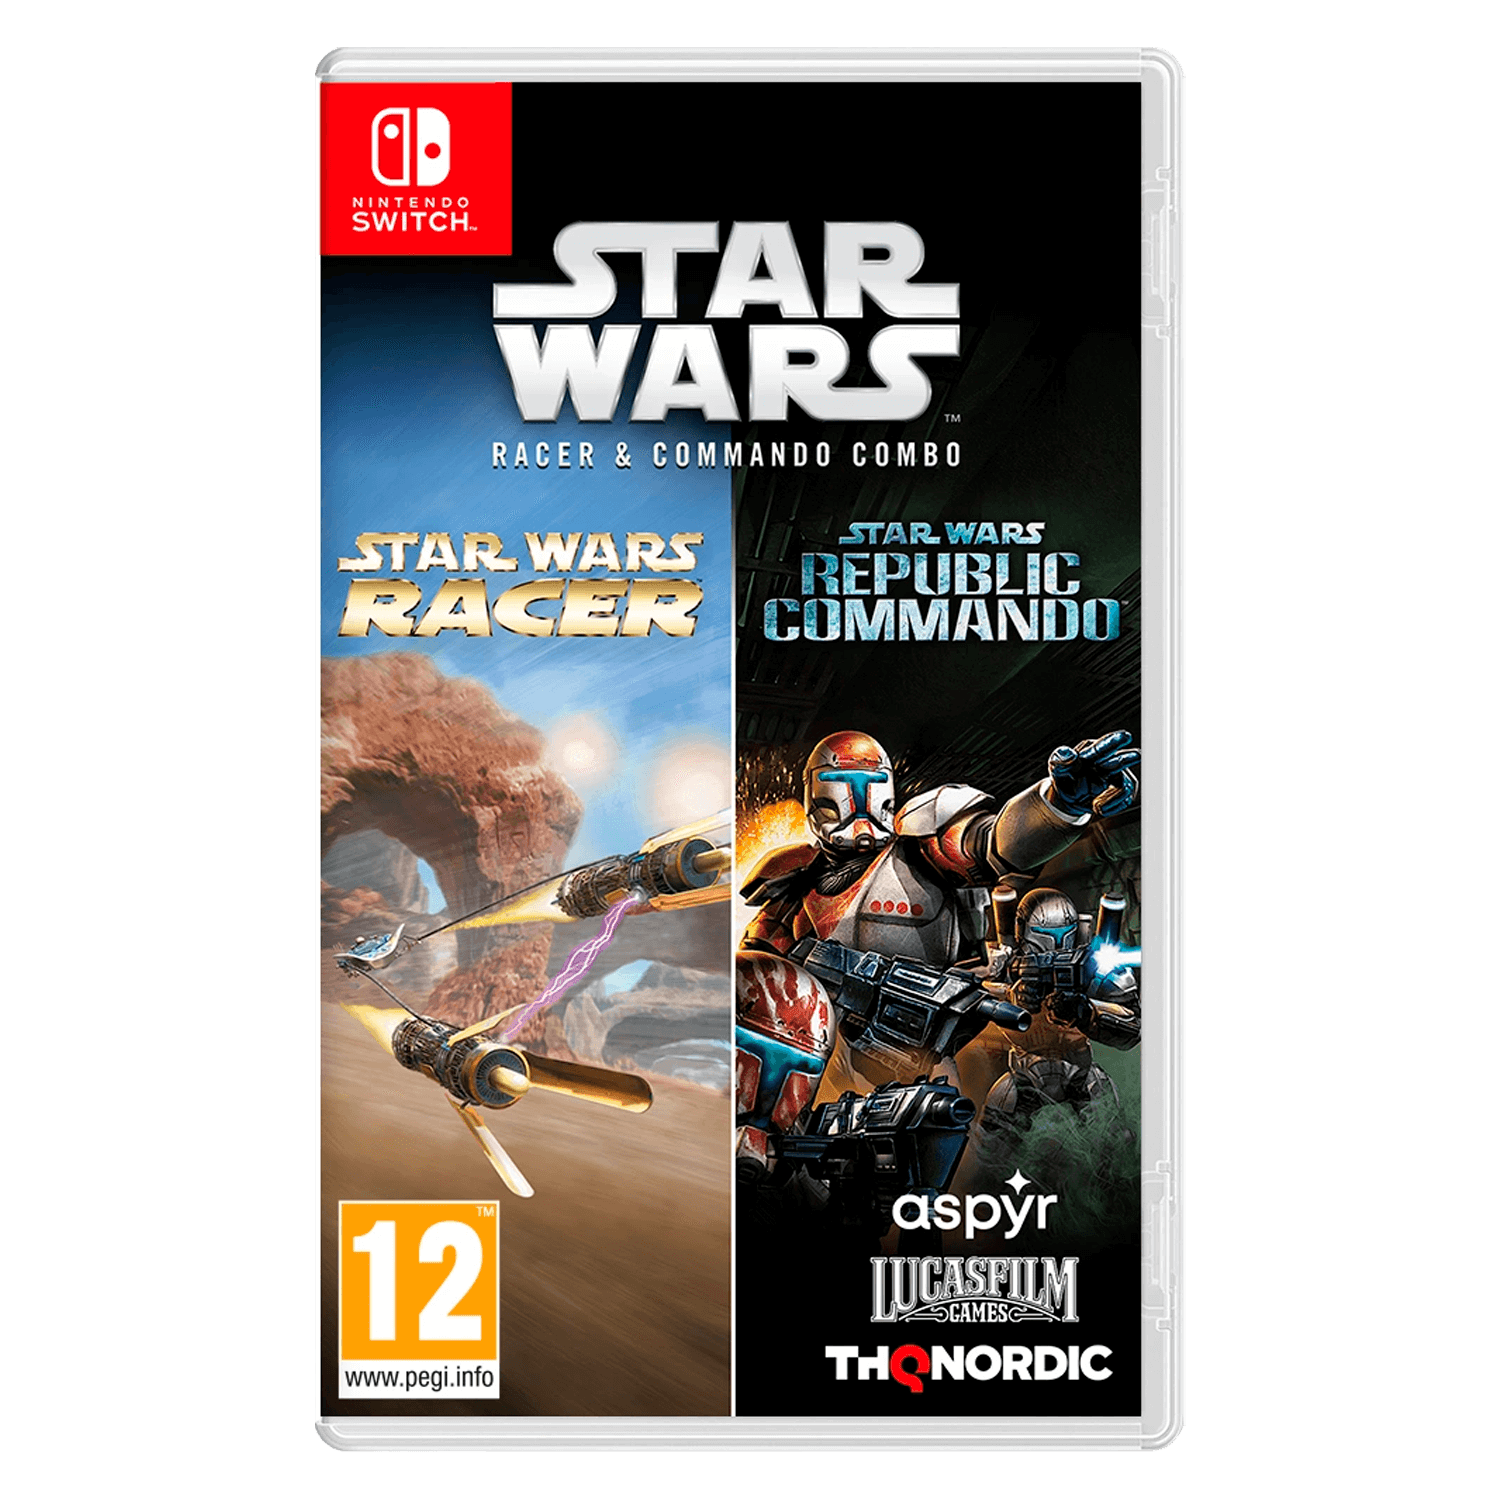 Jogo Star Wars Racer & Commando Combo para Nintendo Switch no Paraguai -  Atacado Games - Paraguay